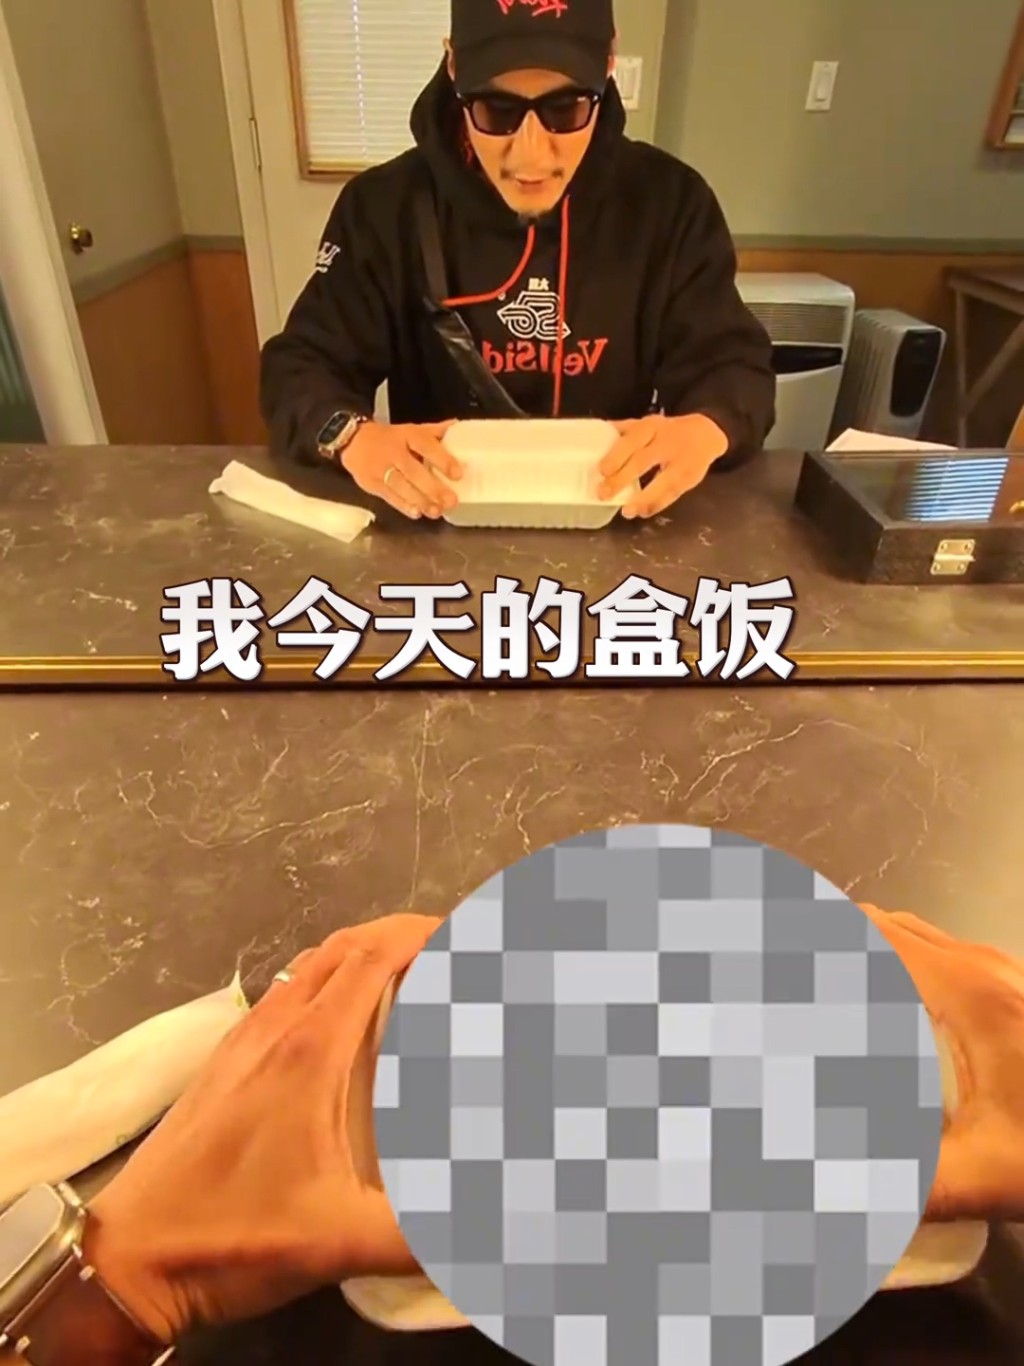 吳彥祖在抖音分享一段在拍攝新片《With Love》的片場伙食片。